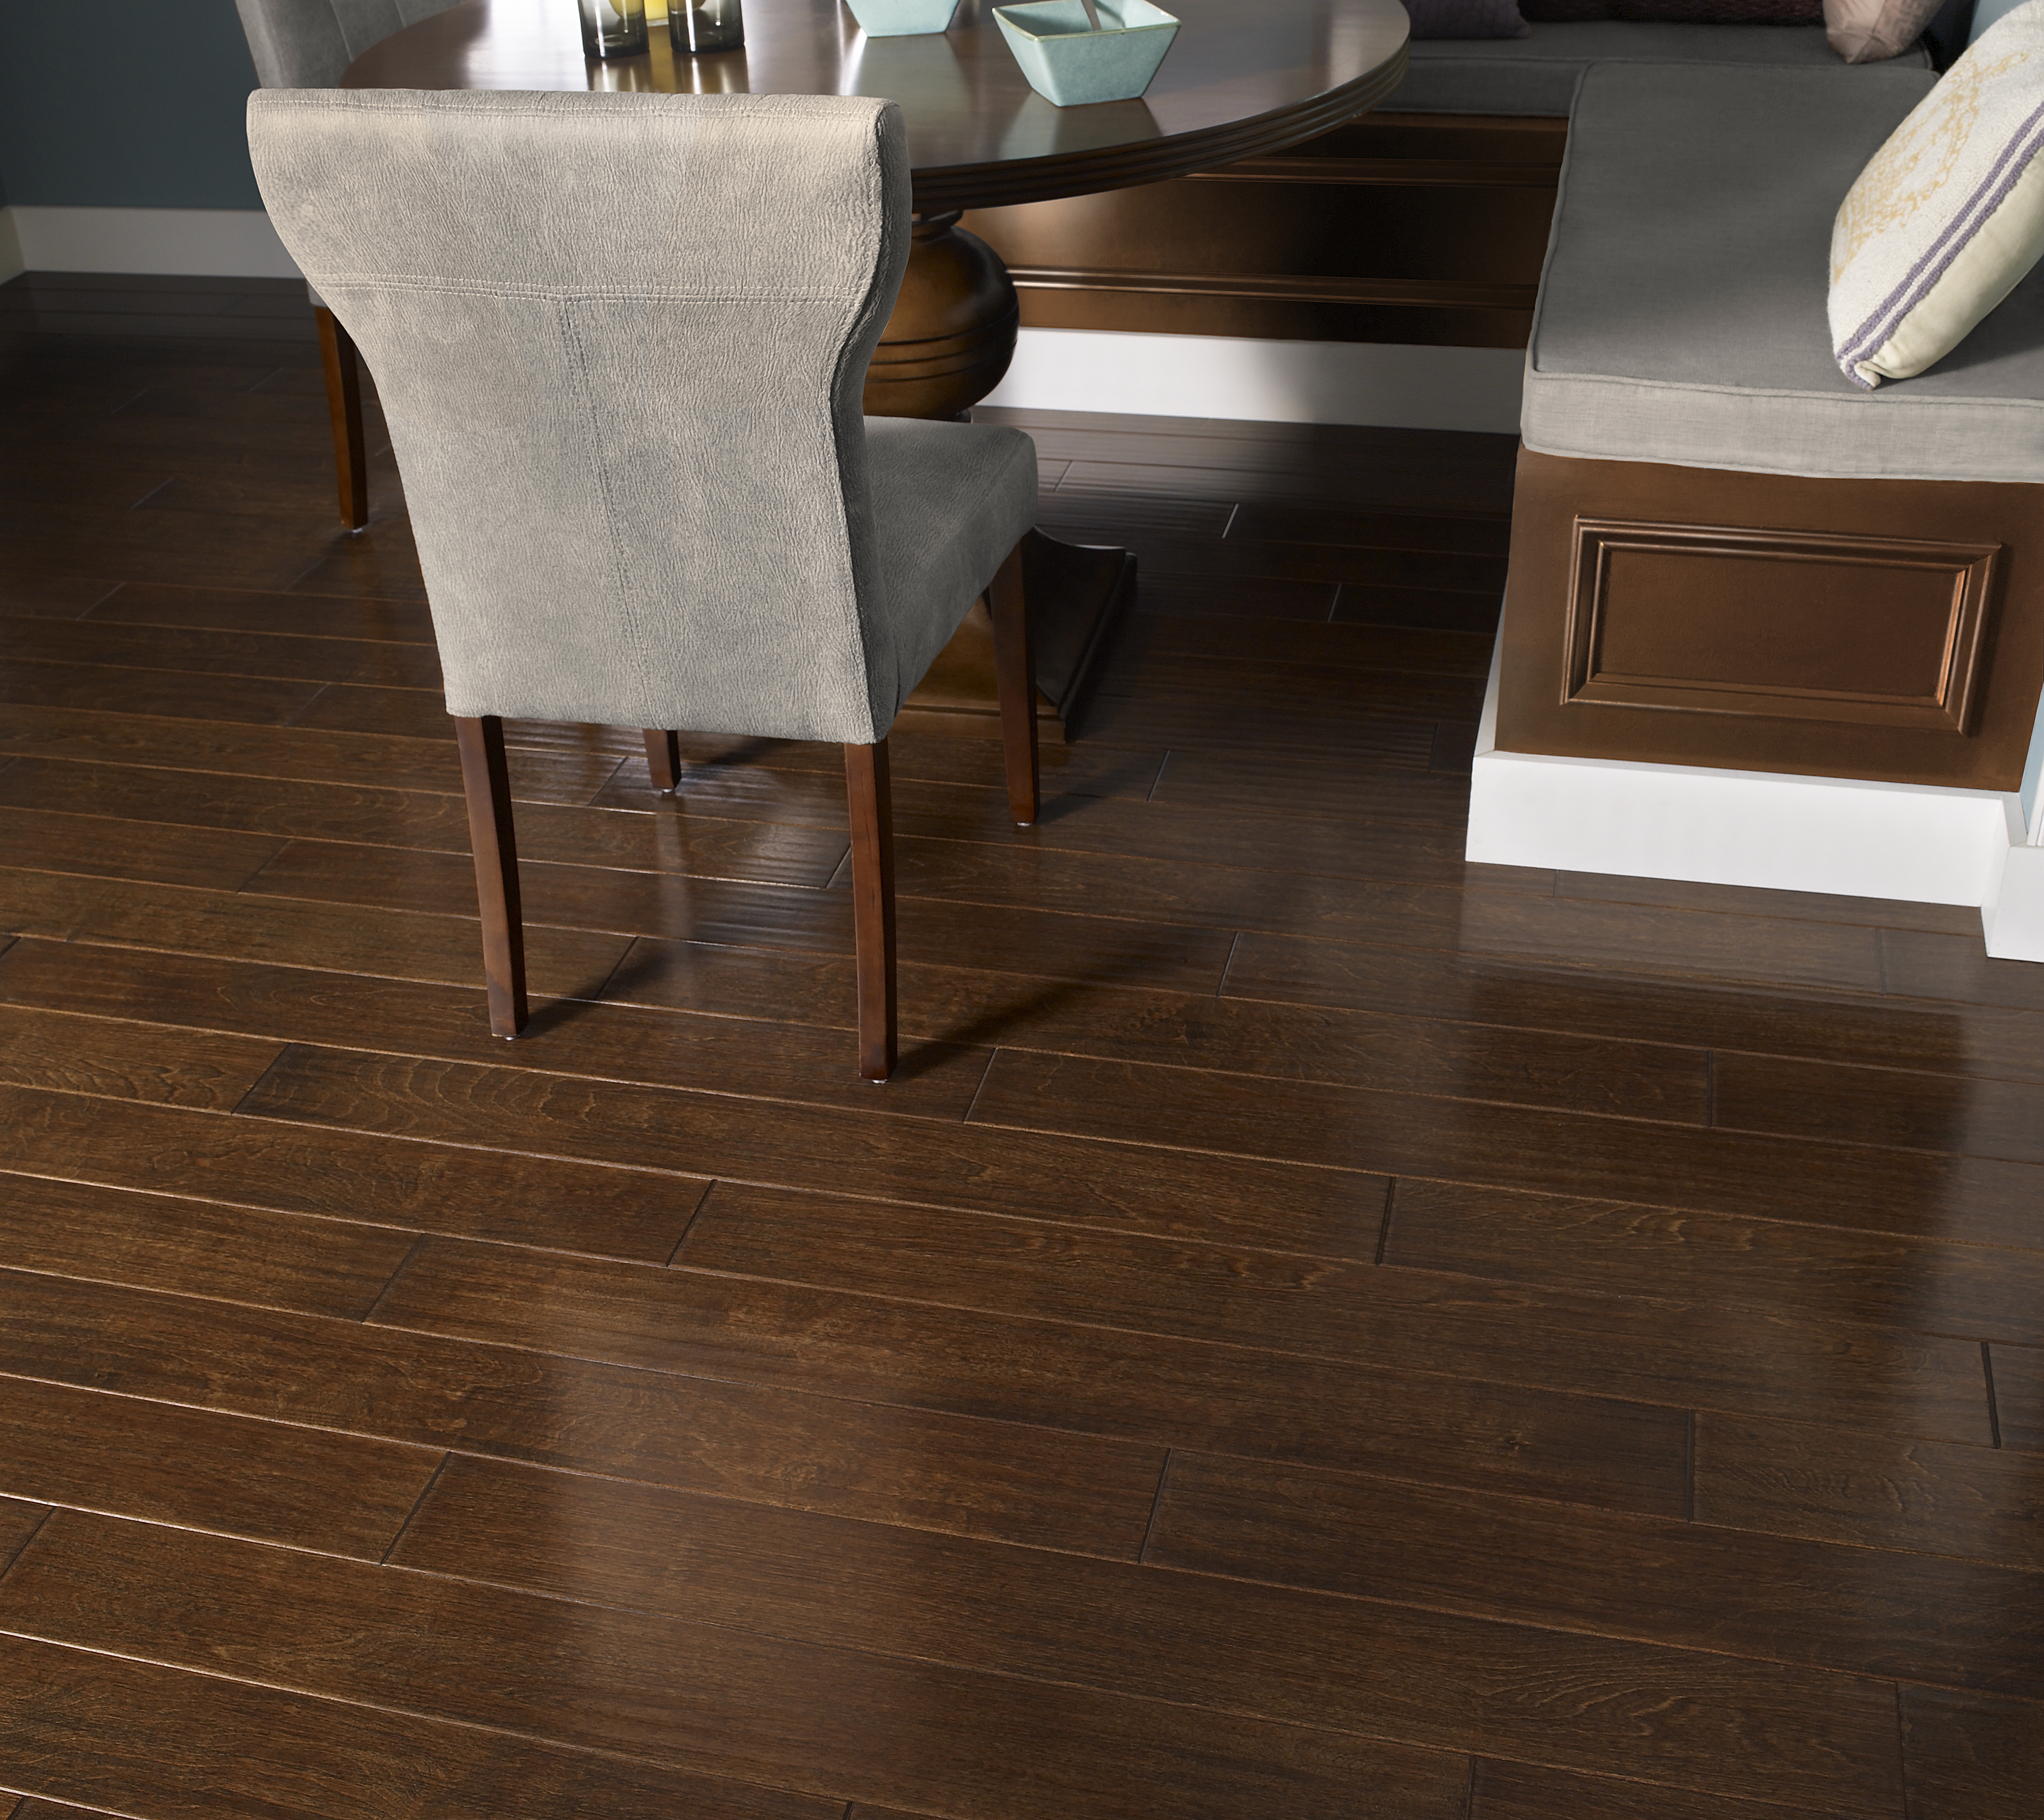 Guide to Choosing Hardwood Flooring Species